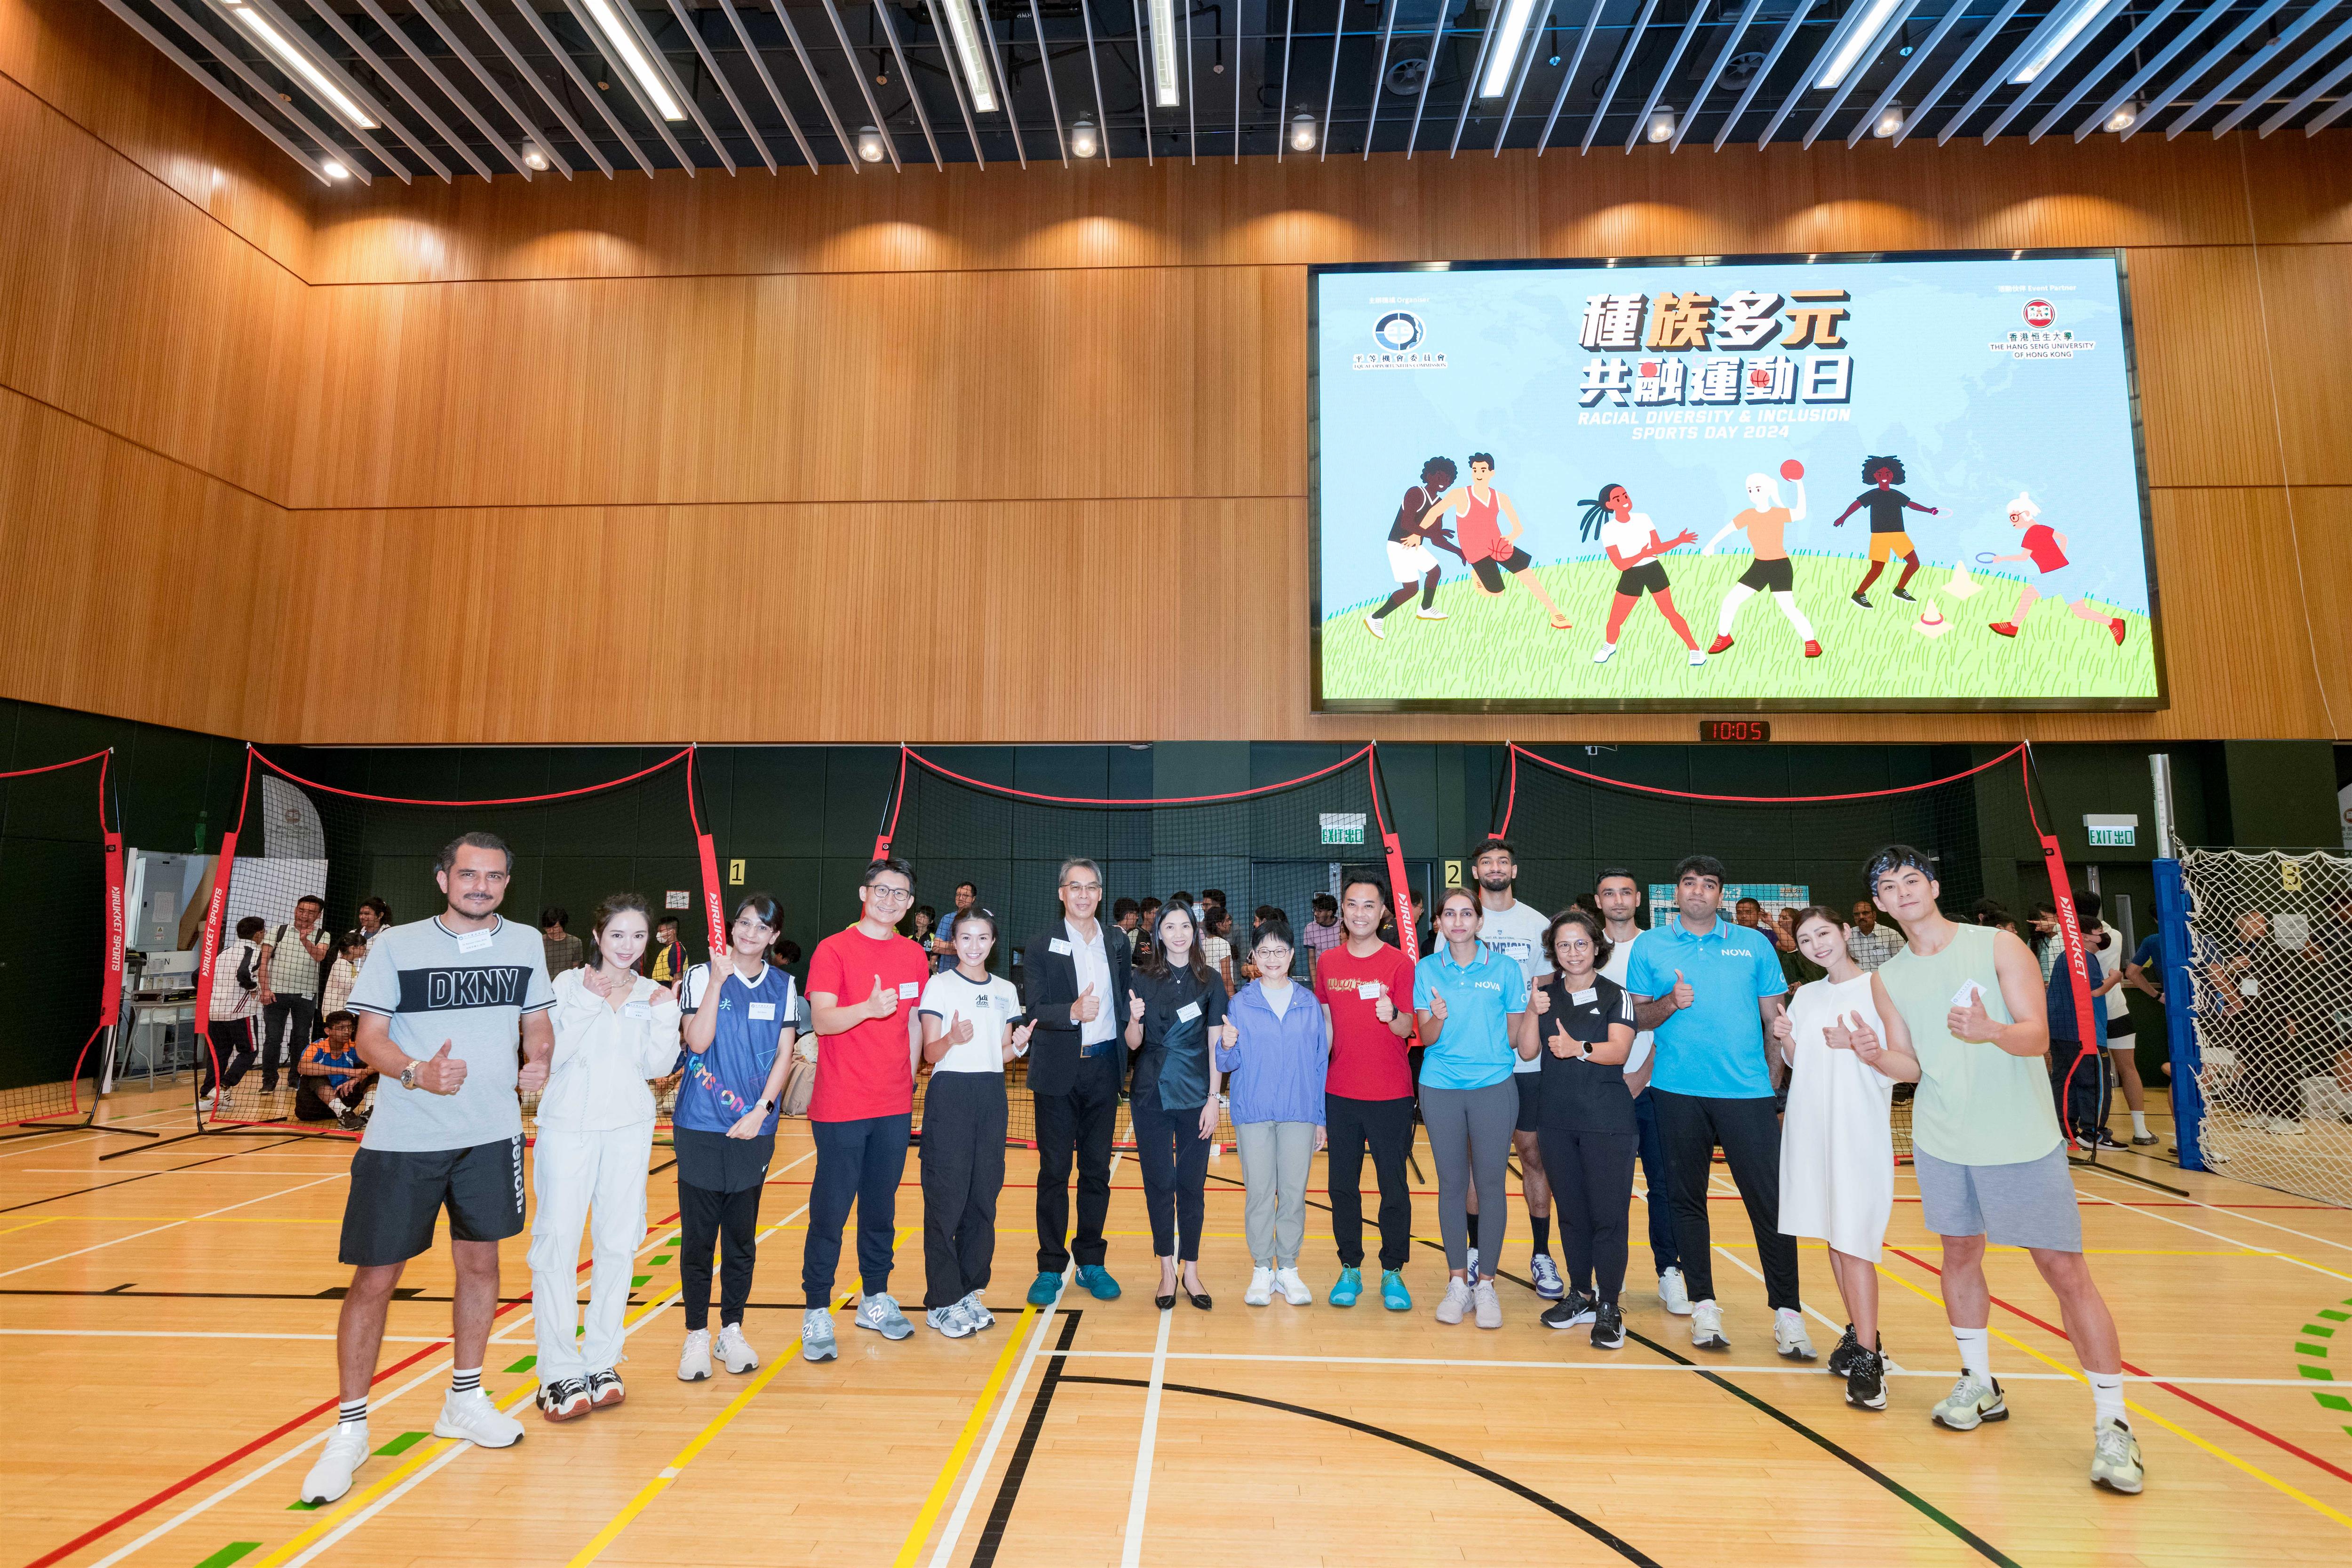 平机会主席林美秀女士, SBS,（左八）、香港恒生大学符可莹副校长教授（教学与学生经验） （左七）与一众闪避球邀请赛嘉宾合照。